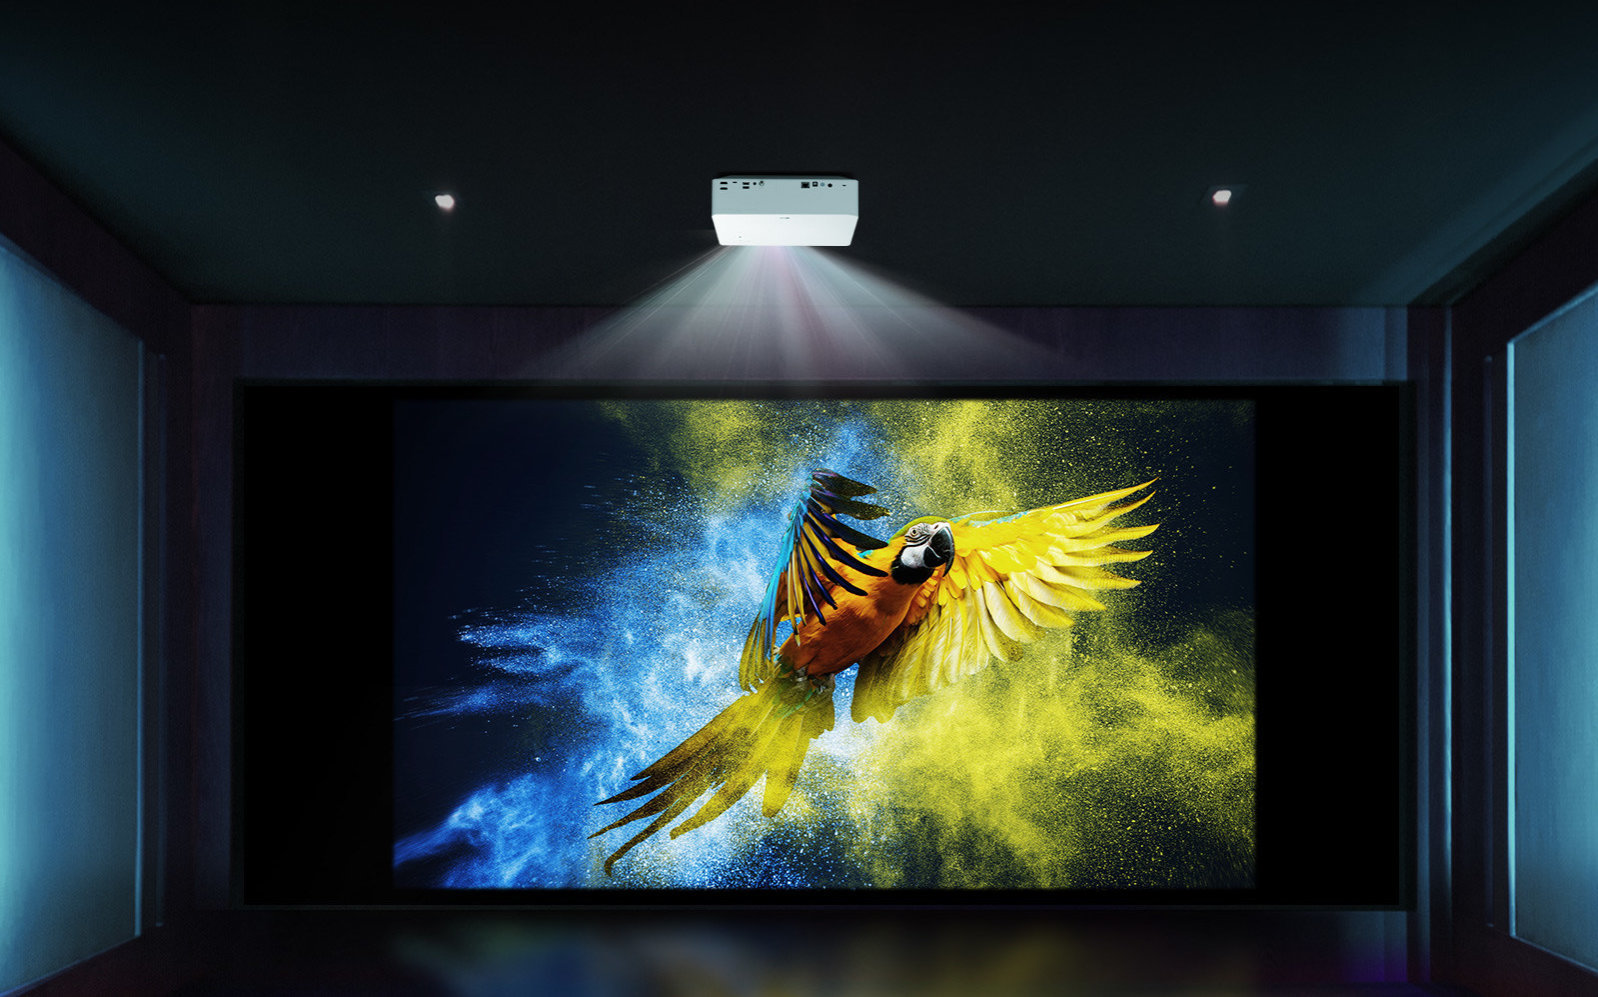 Máy chiếu 4K UHD CineBeam mới của LG sẽ có giá thành rất dễ chịu 1,799 USD